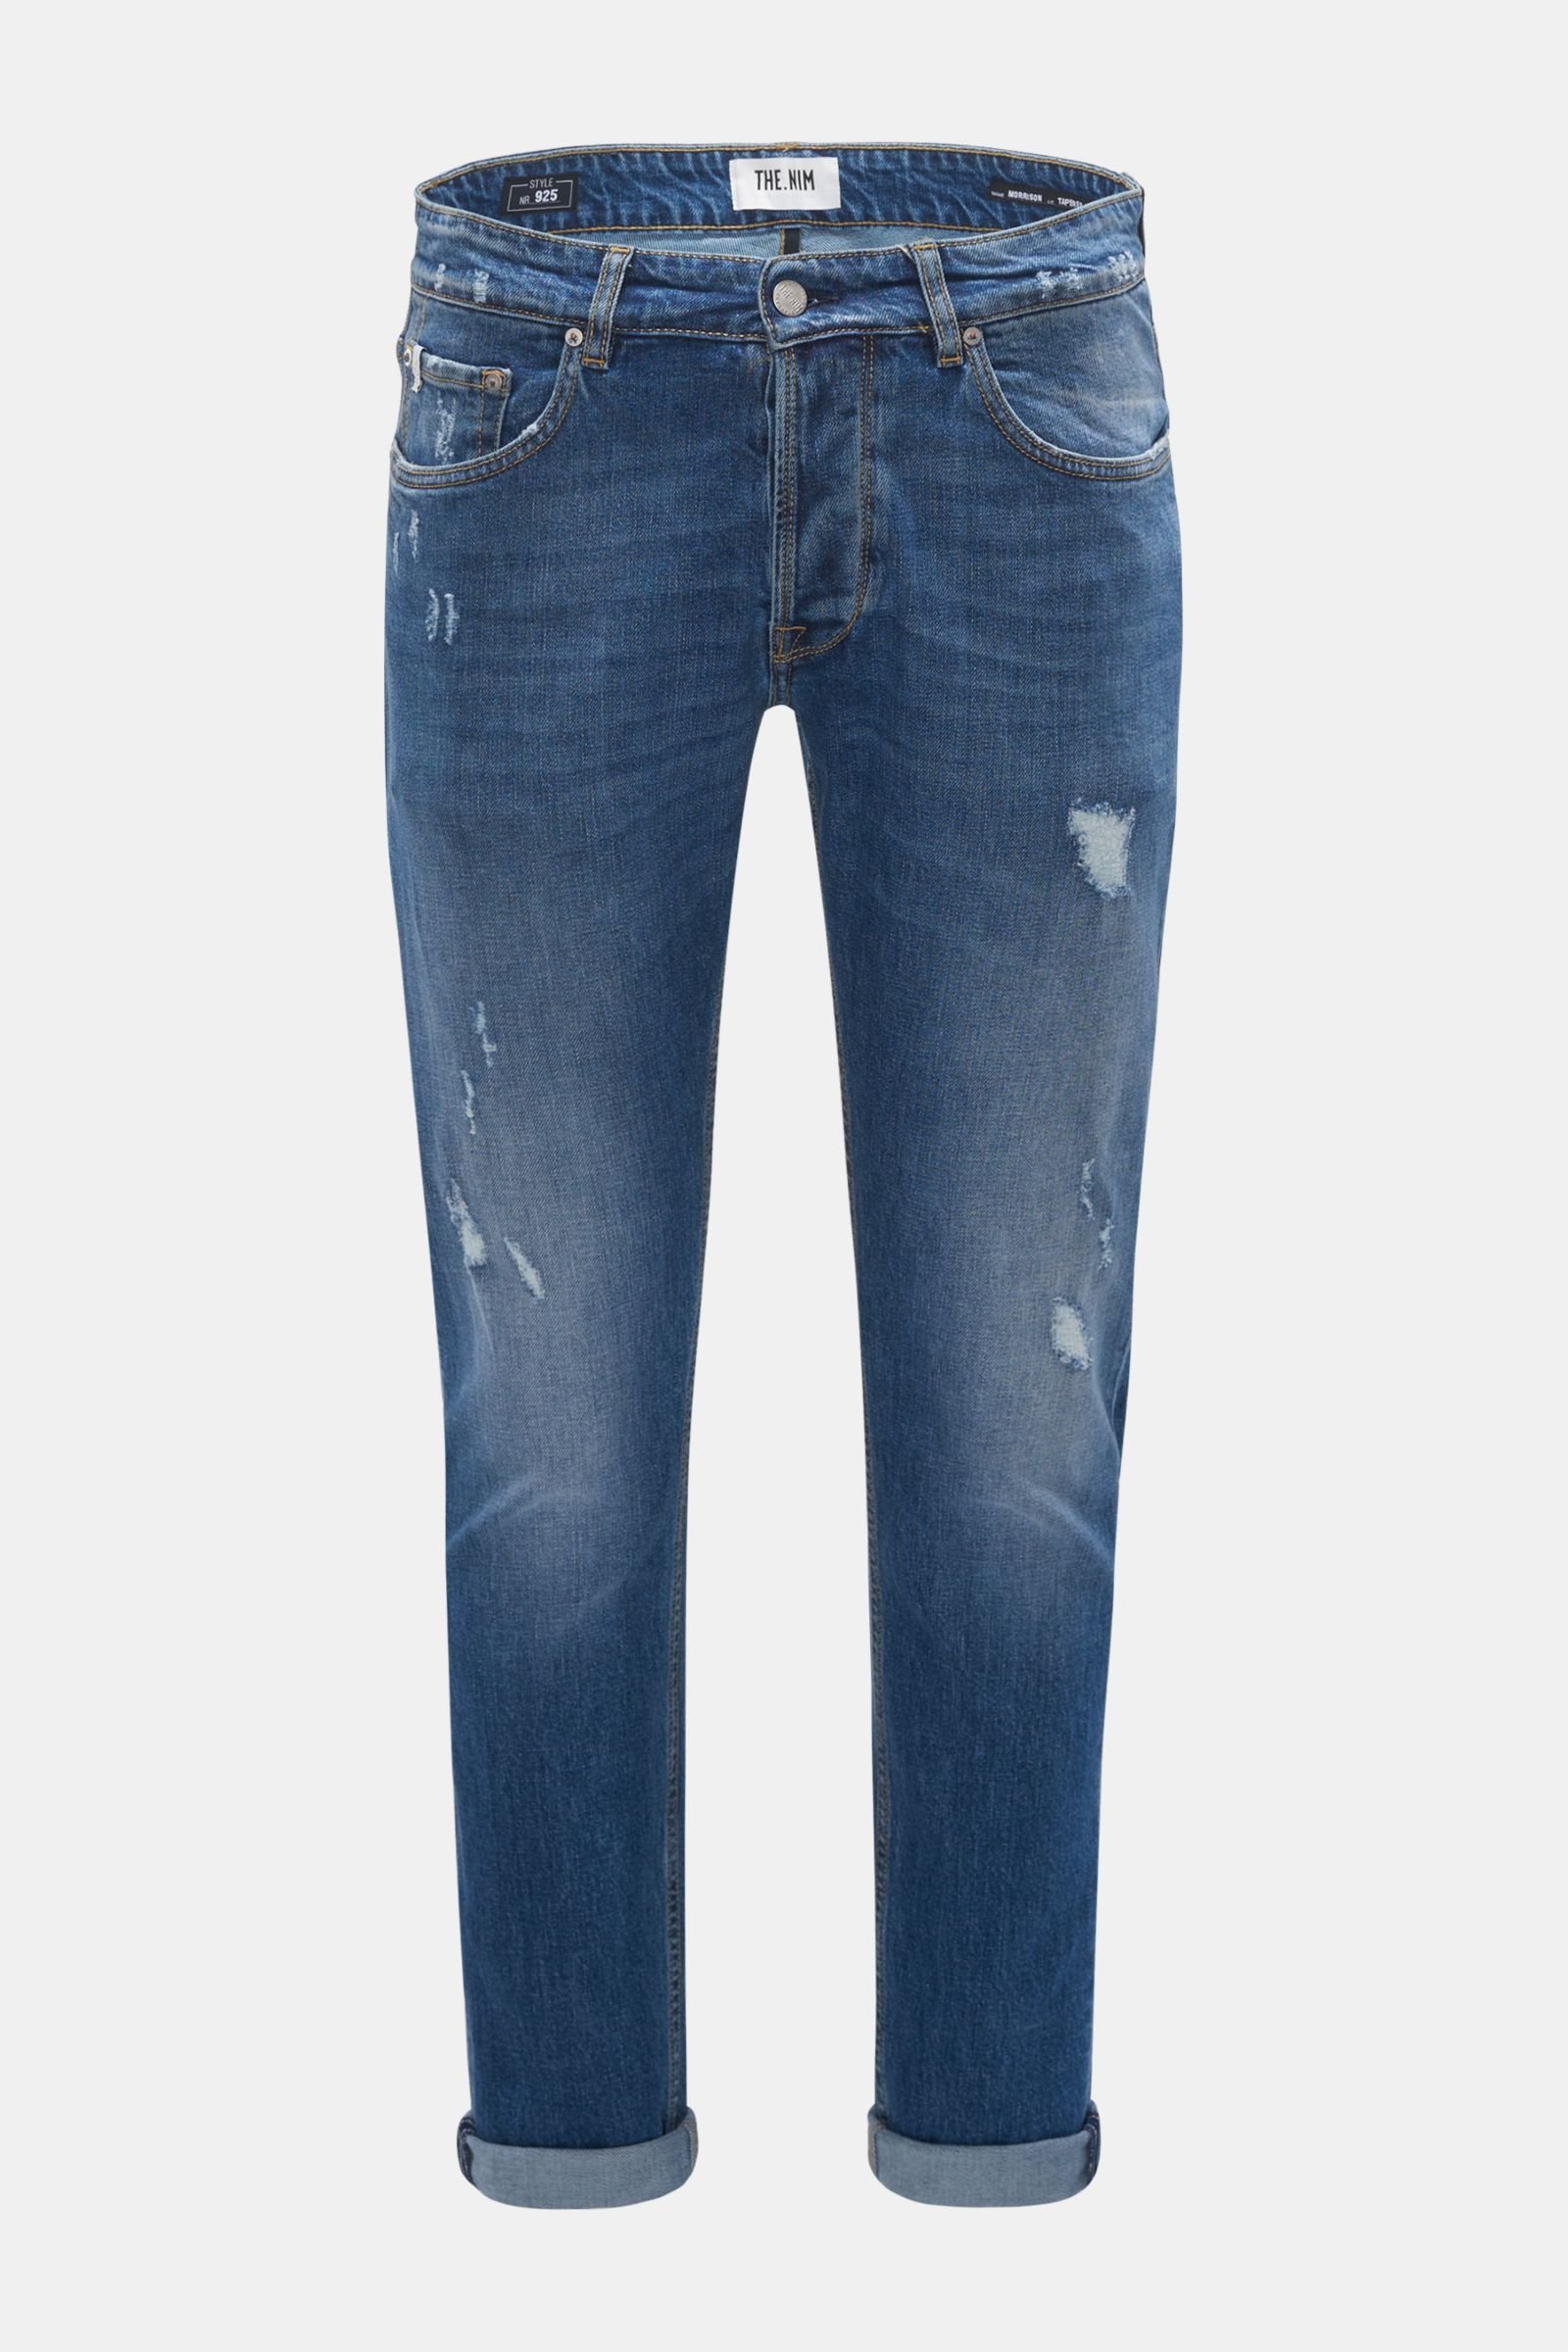 Jeans '925 Morrison Tapered Slim' grey-blue